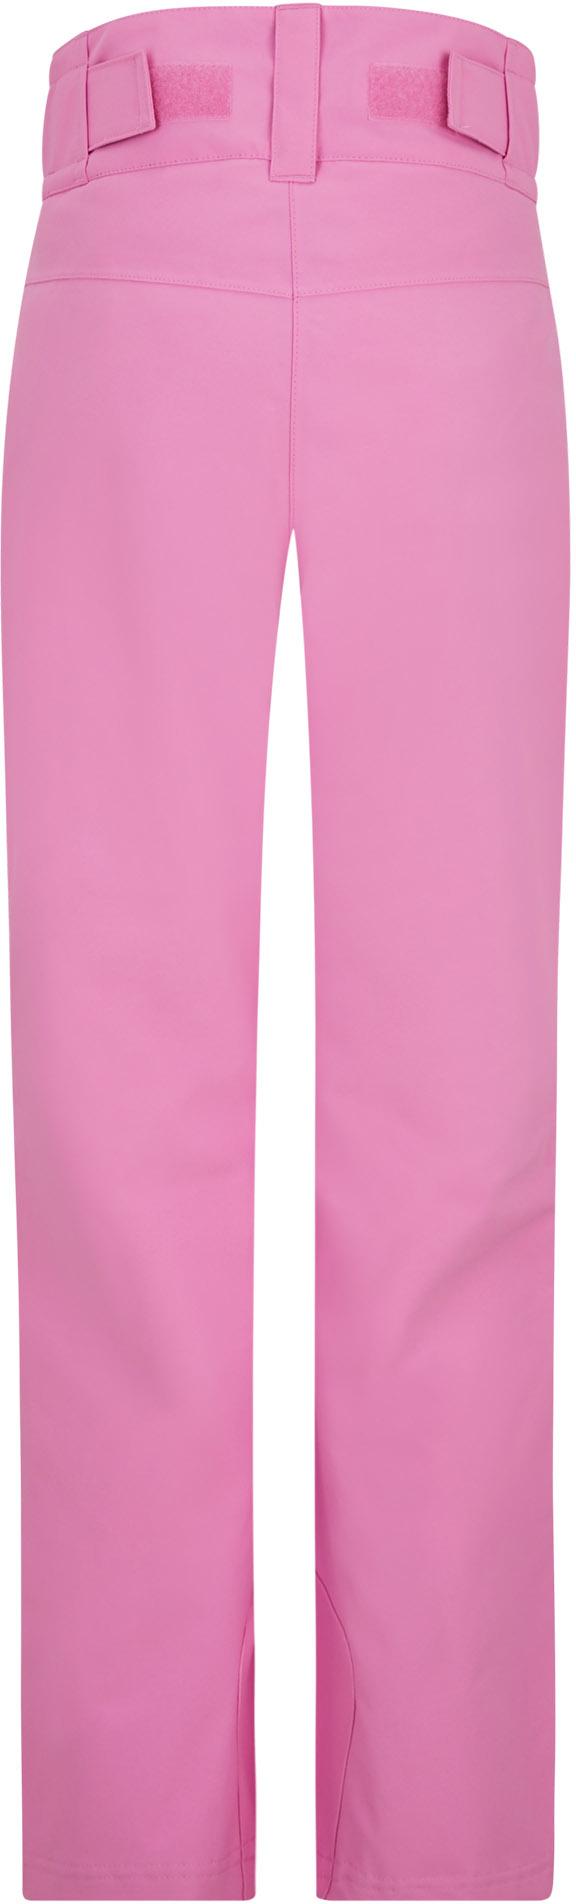 Kleidung von Ziener rosa von Online in SportScheck kaufen Shop im